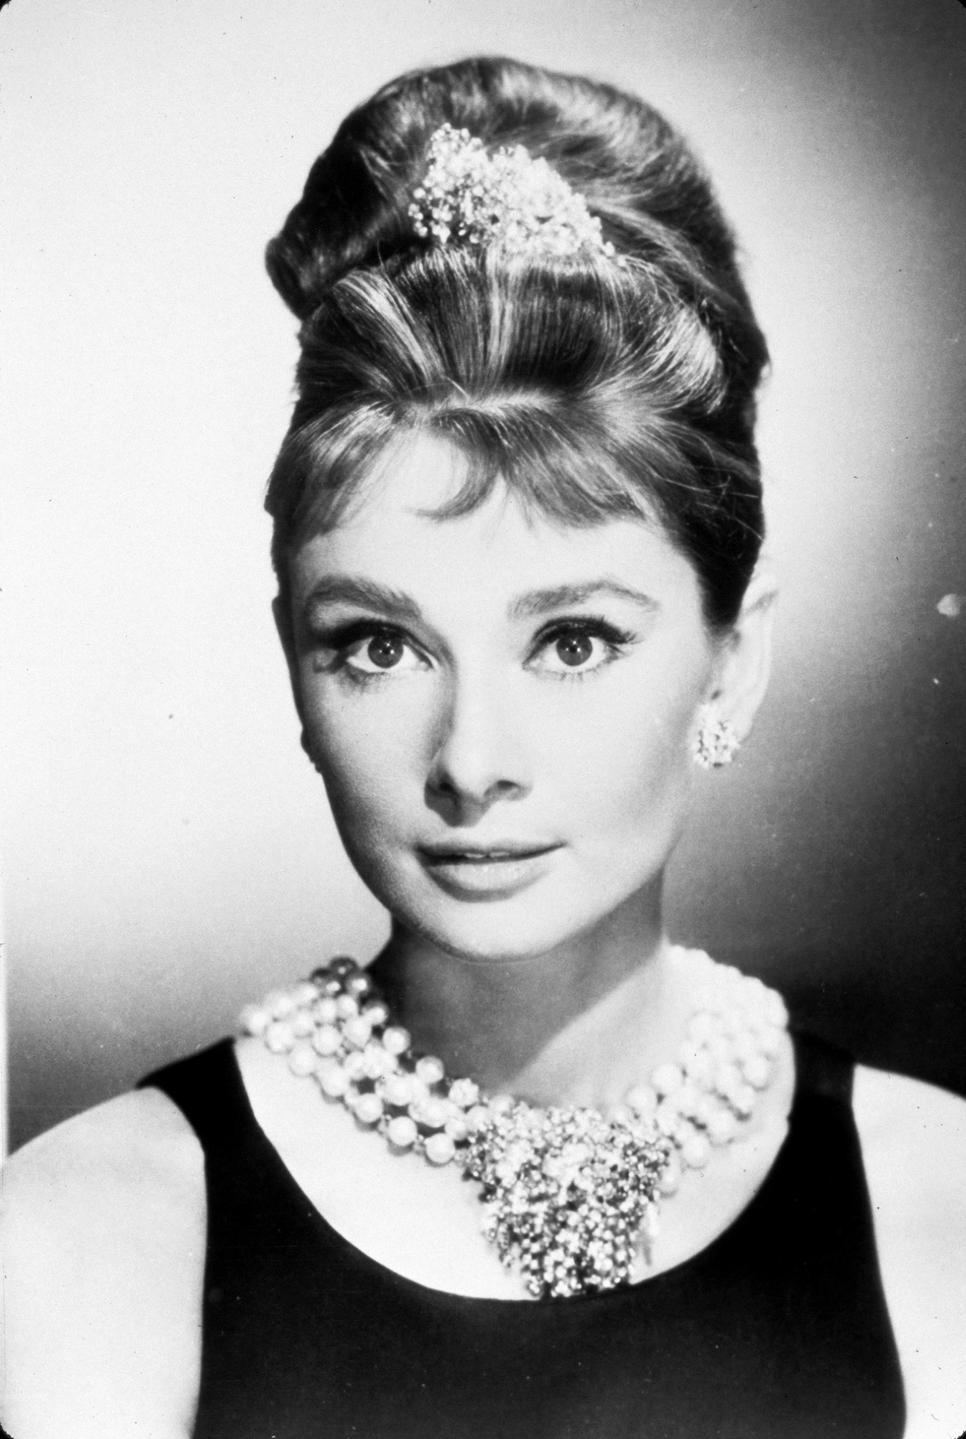 Le chignon emblématique d'Audrey Hepburn résiste à l'épreuve du temps